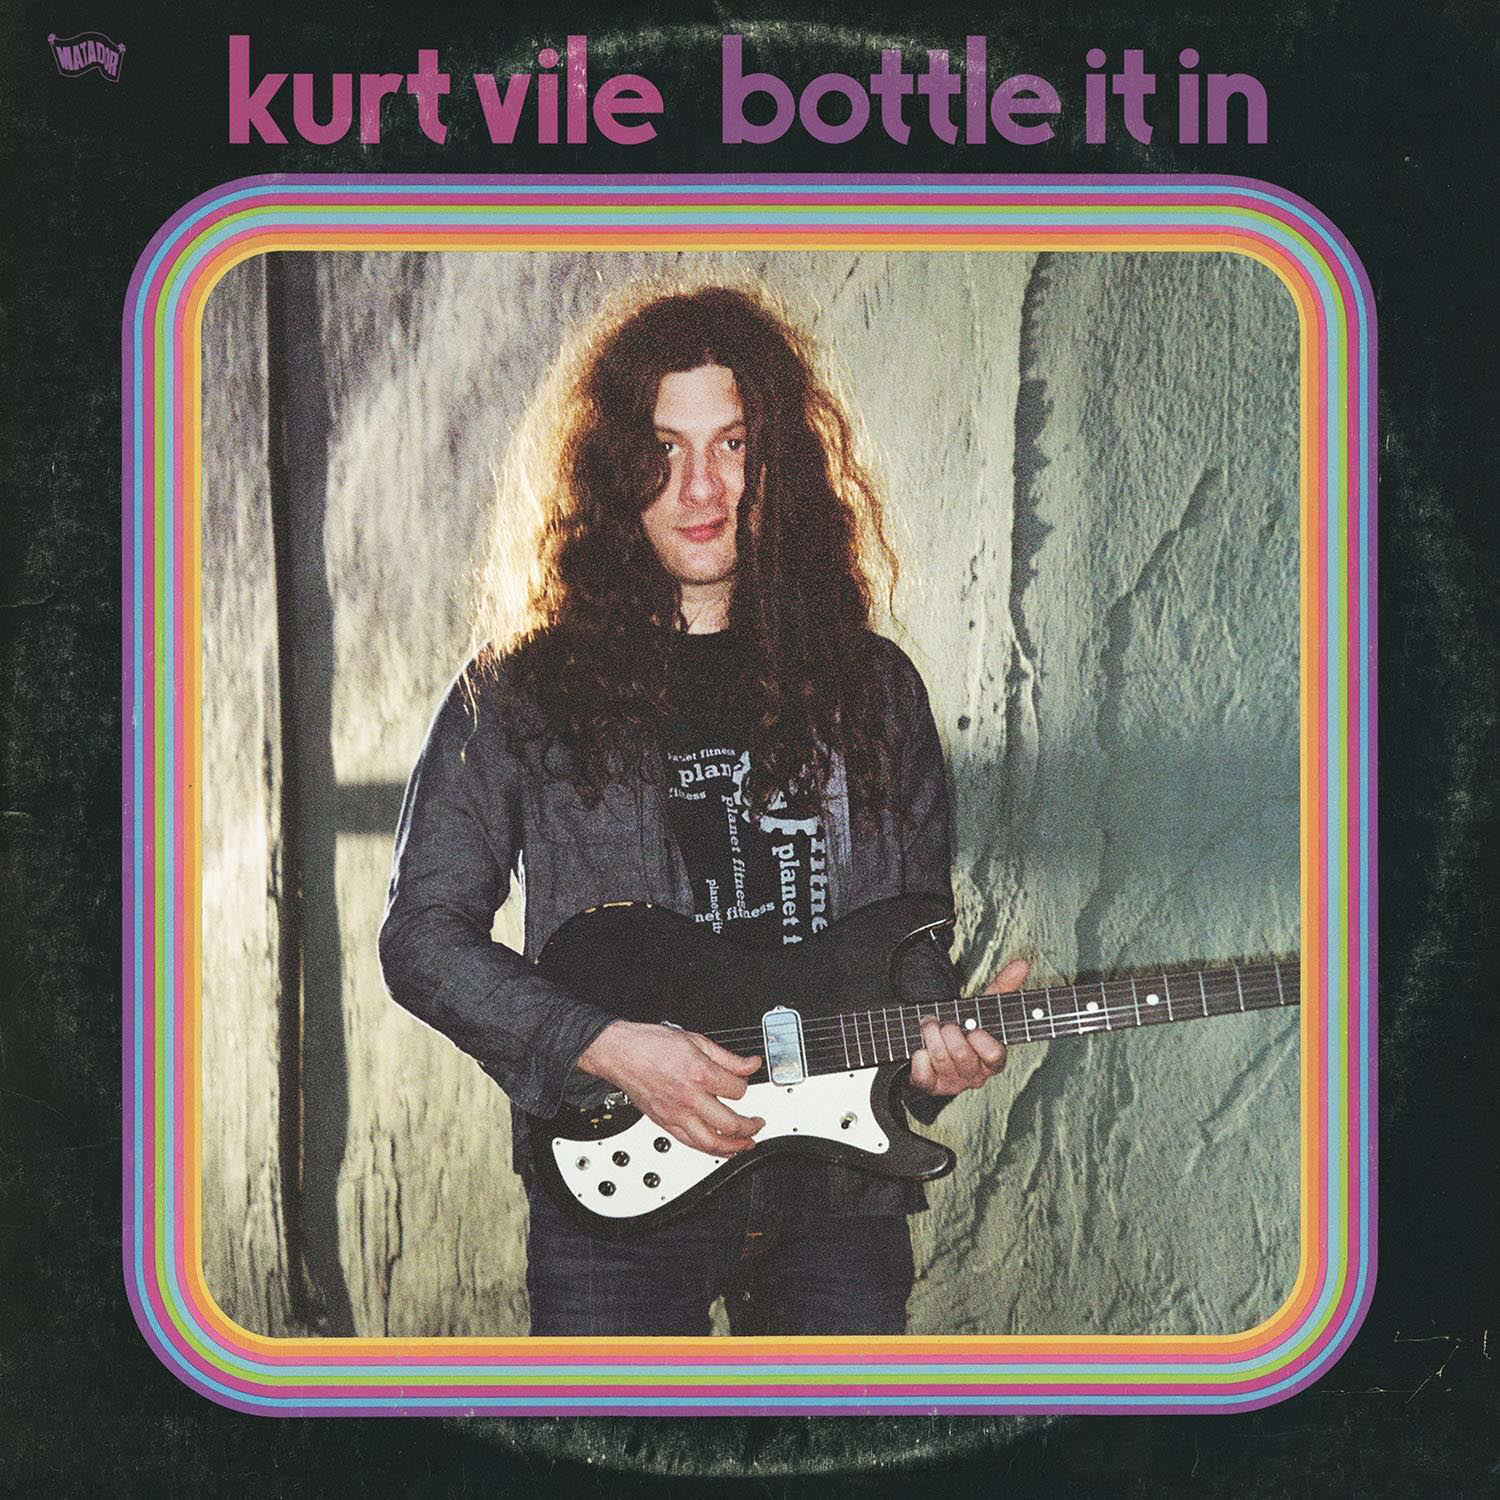 Kurt Vile - (CD) It - Bottle In